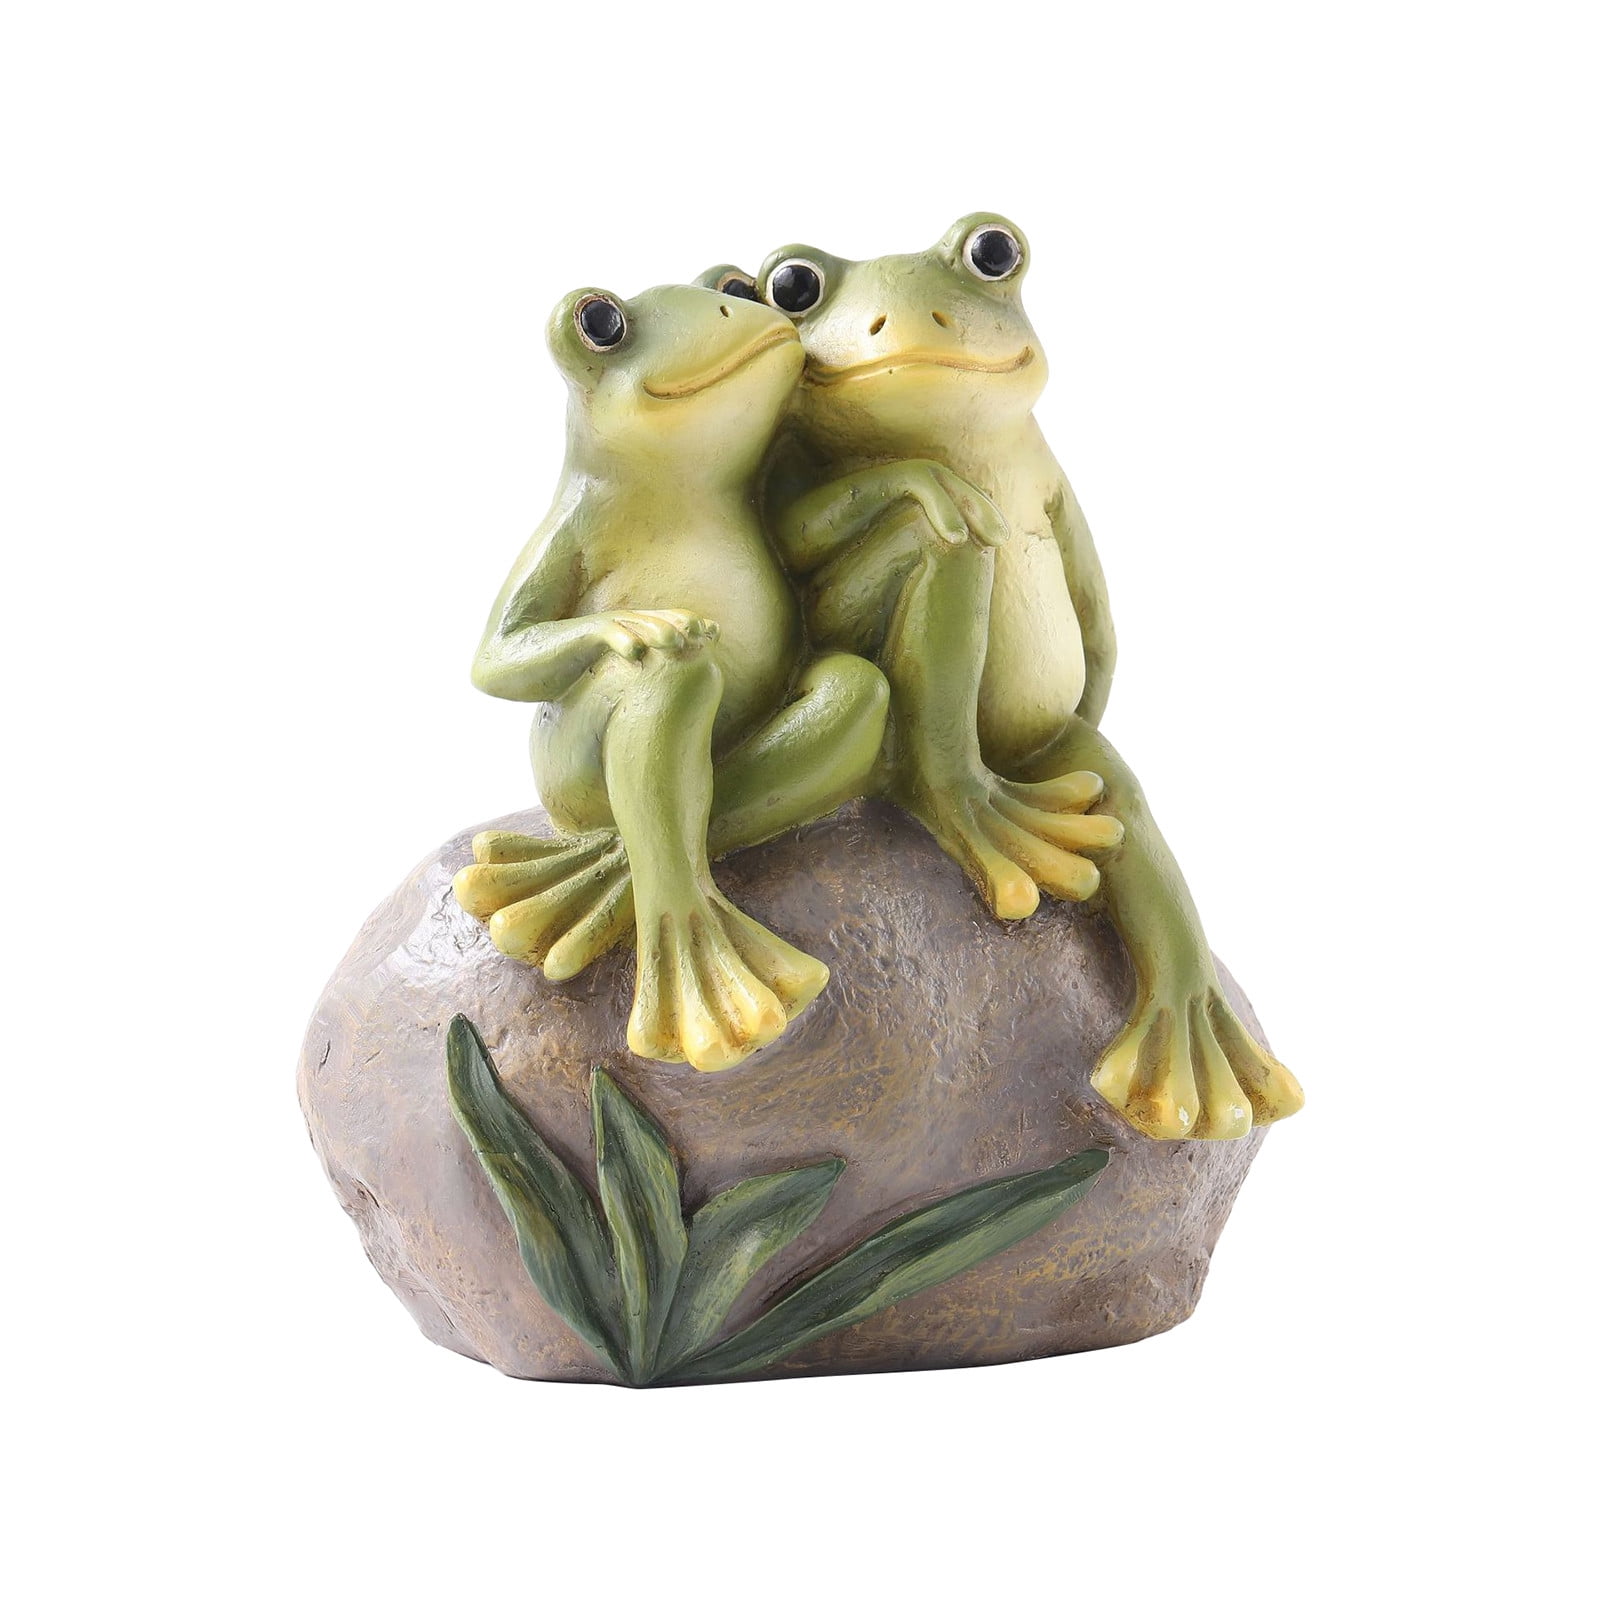 Details about   Novelty Resin Animal Frog Crafts Home Car Decor Office Desktop Ornament B 